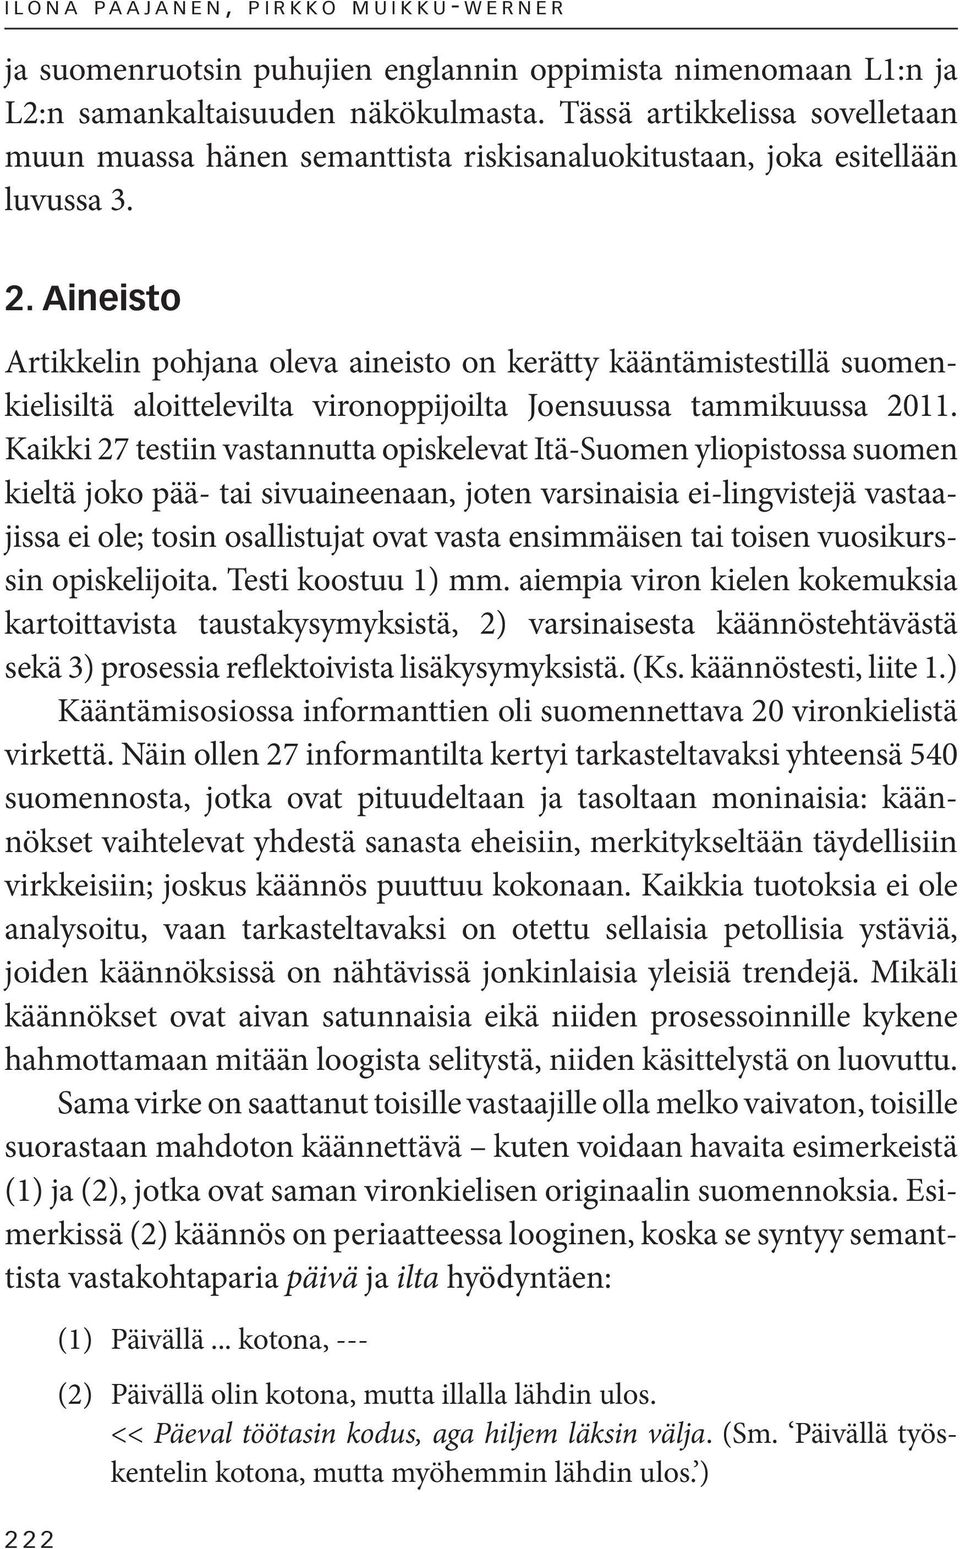 Aineisto Artikkelin pohjana oleva aineisto on kerätty kääntämistestillä suomenkielisiltä aloittelevilta vironoppijoilta Joensuussa tammikuussa 2011.